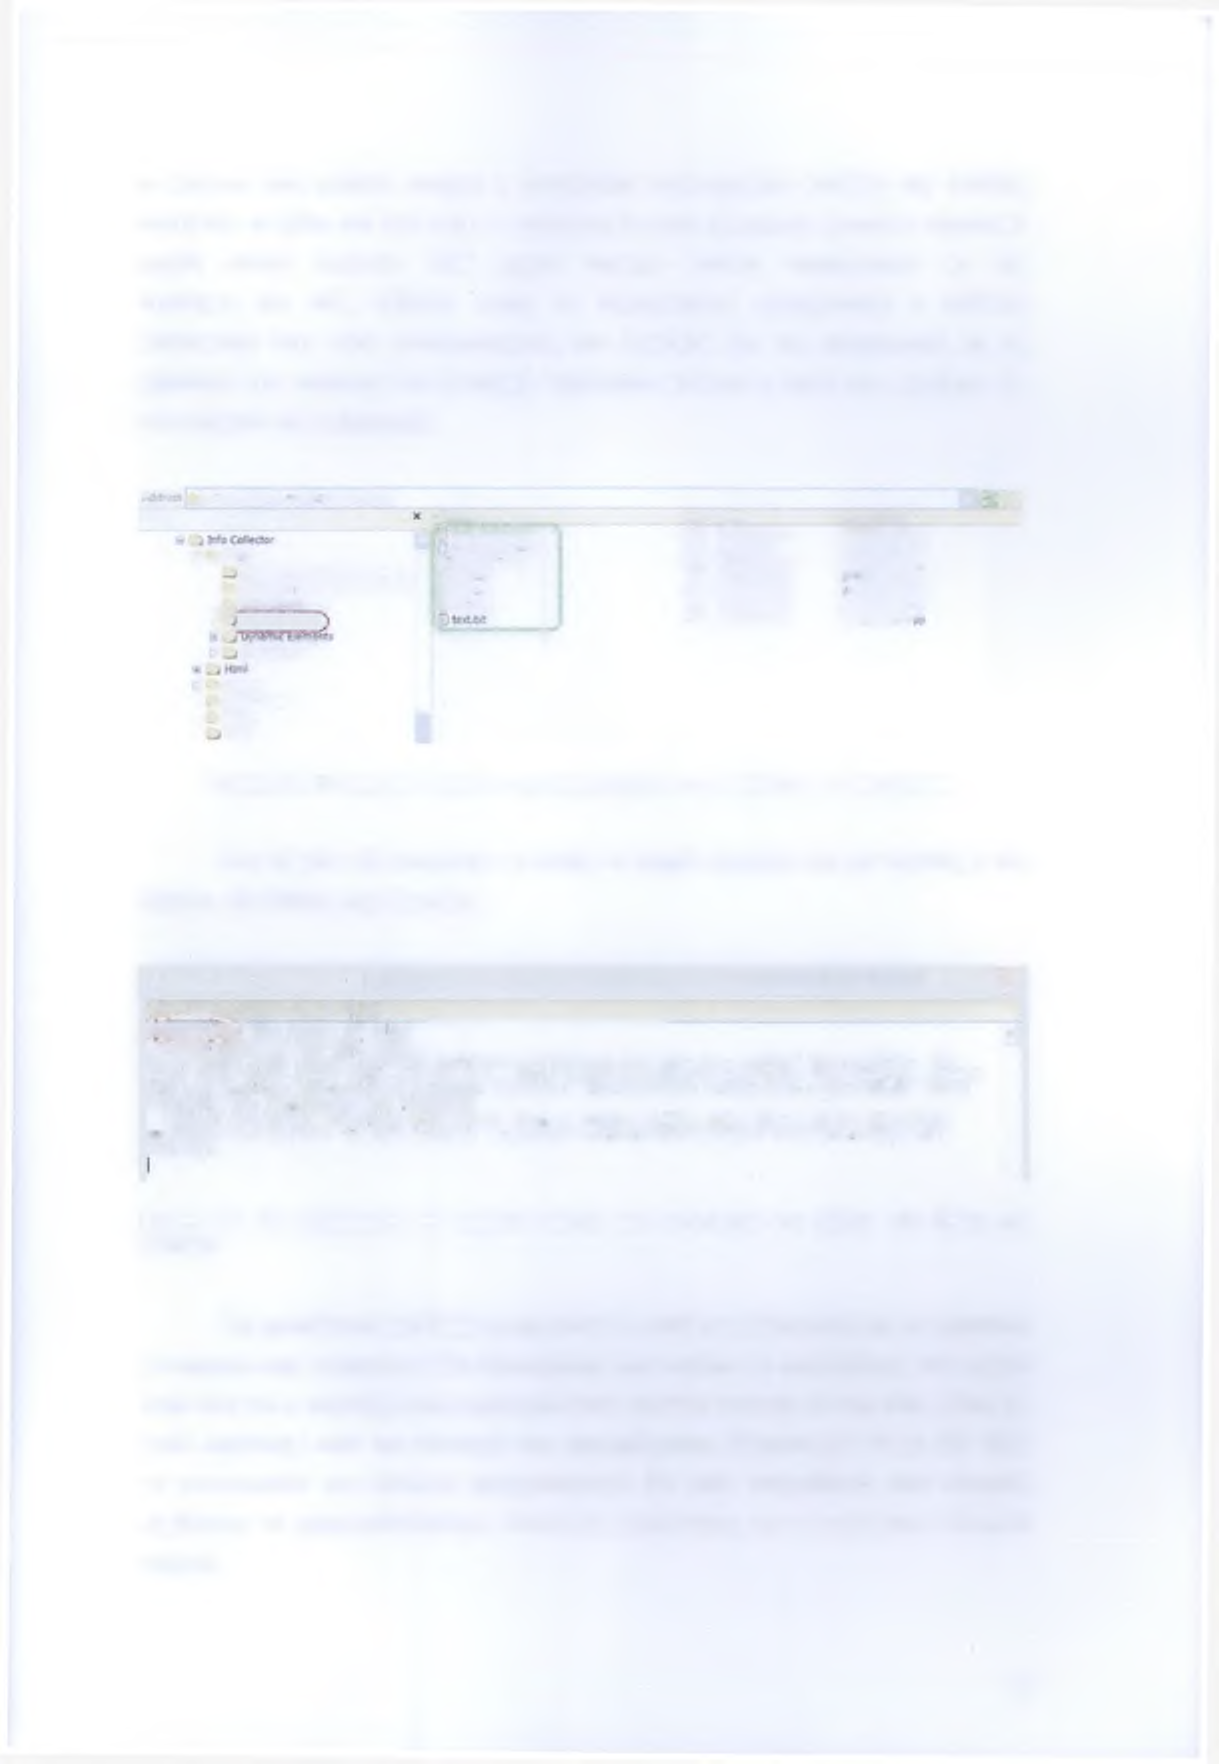 το κείμενο είναι μεγάλο υπάρχει η δυνατότητα κατακόρυφου scrolling της σελίδας πατώντας τα βέλη στο δεξί άκρο. Η πολυμεσική αυτή εφαρμογή φορτώνει εξωτερικά αρχεία απλού κειμένου.